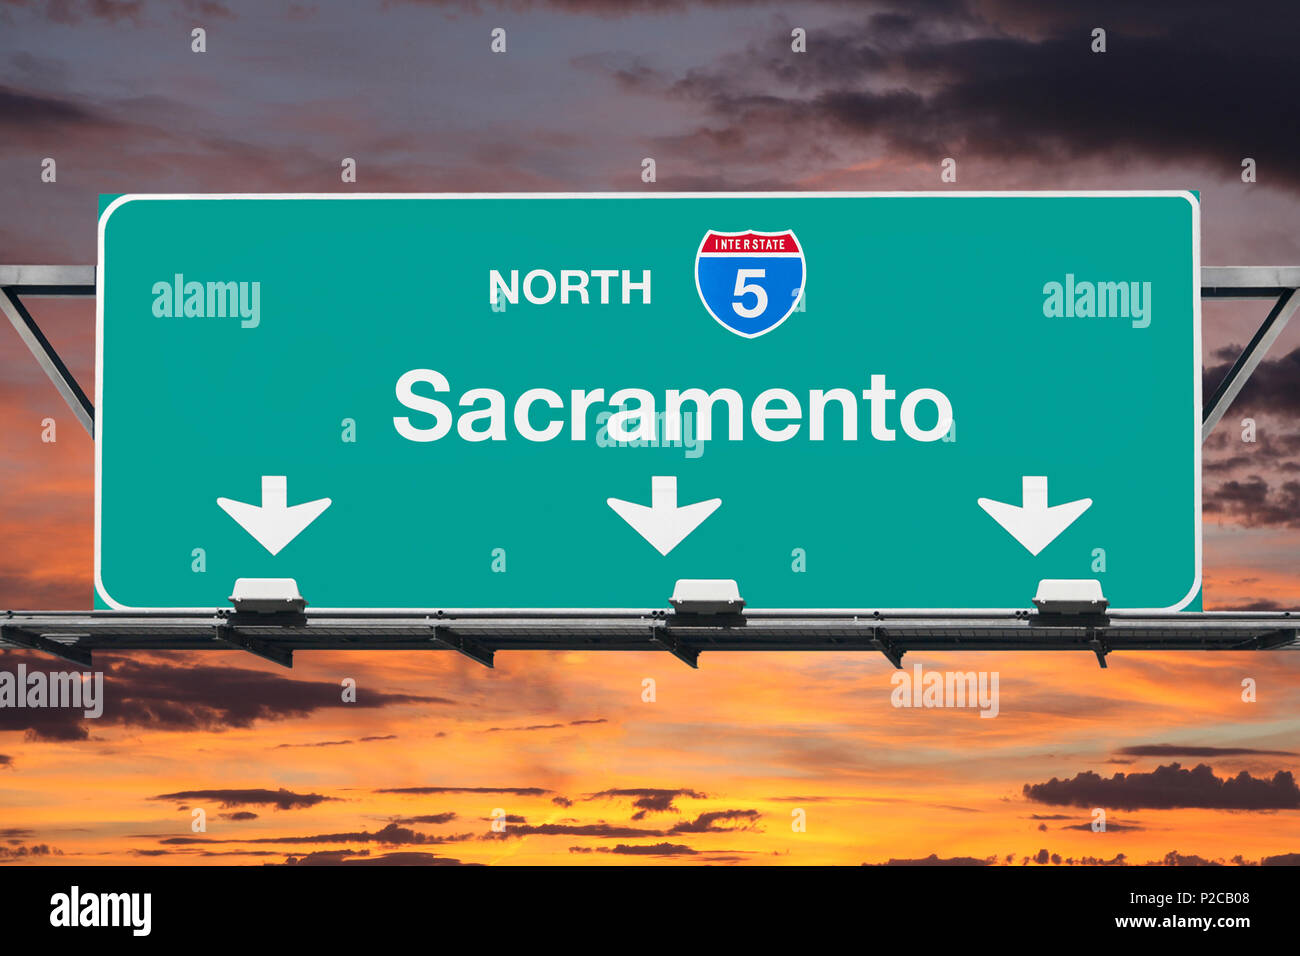 Sacramento Kalifornien route 5 North overhead Autobahnzeichen mit Sonnenuntergang Himmel. Stockfoto